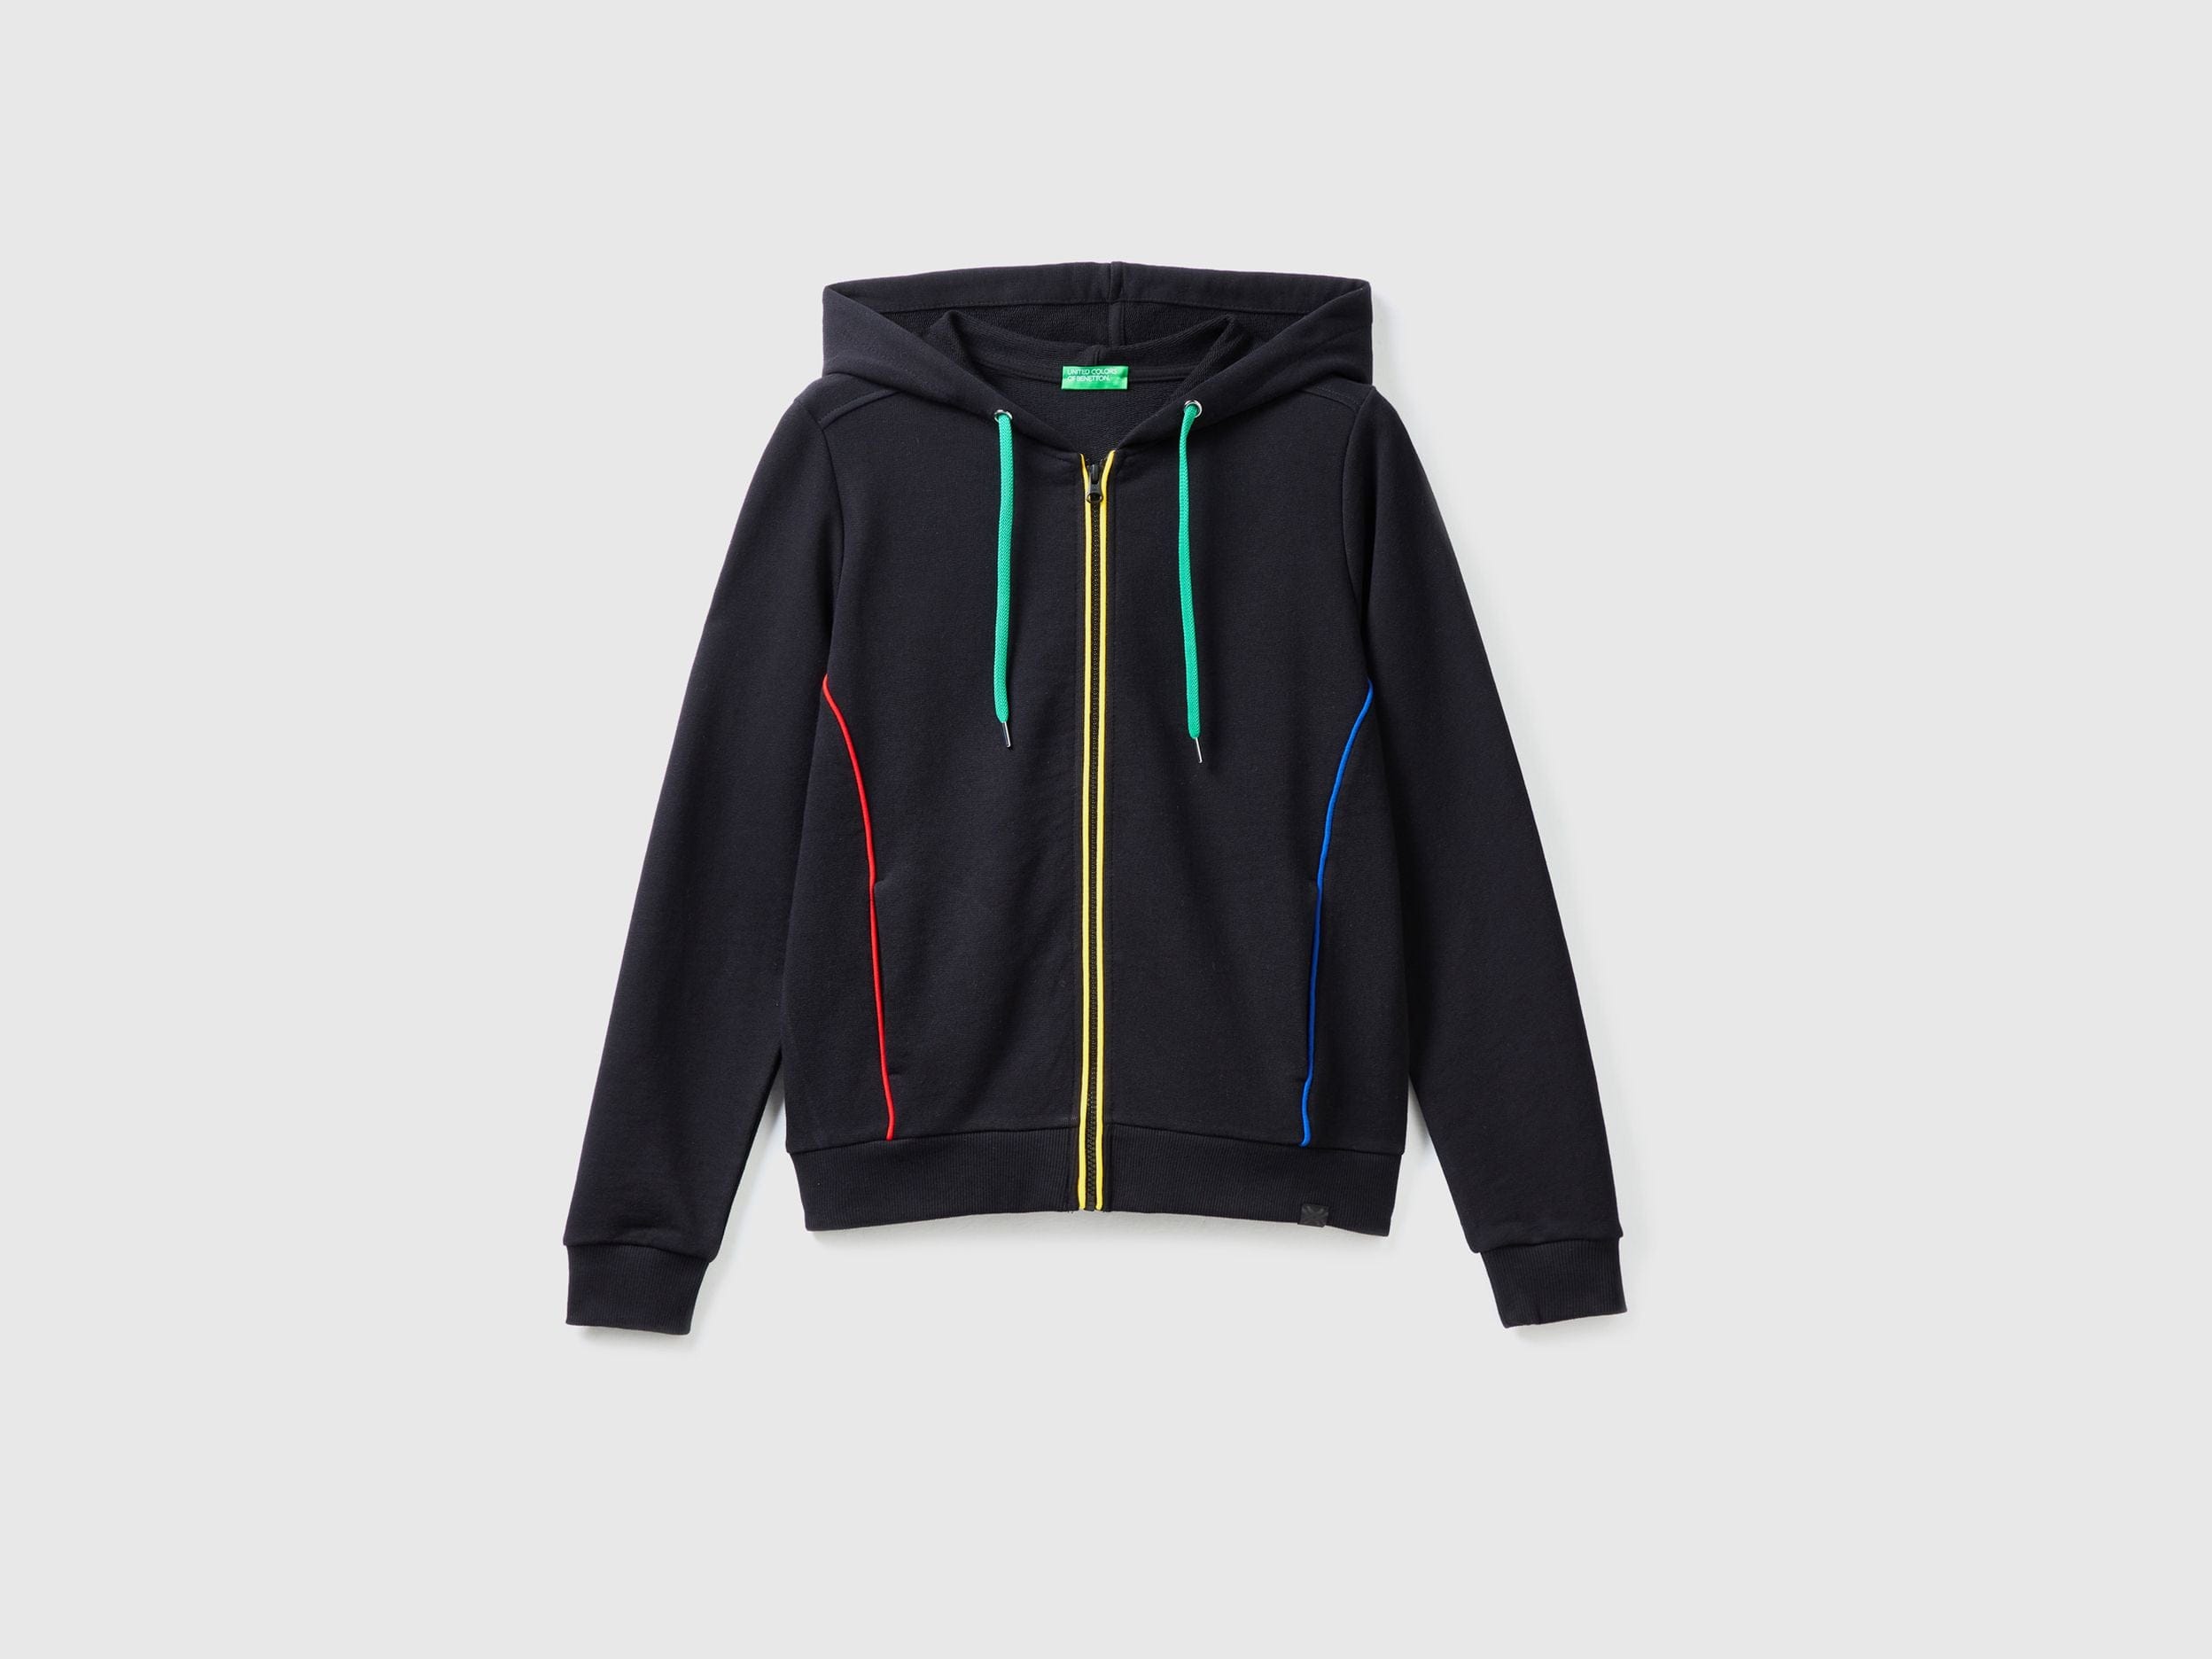 100% cotton sweatshirt with zip and hood